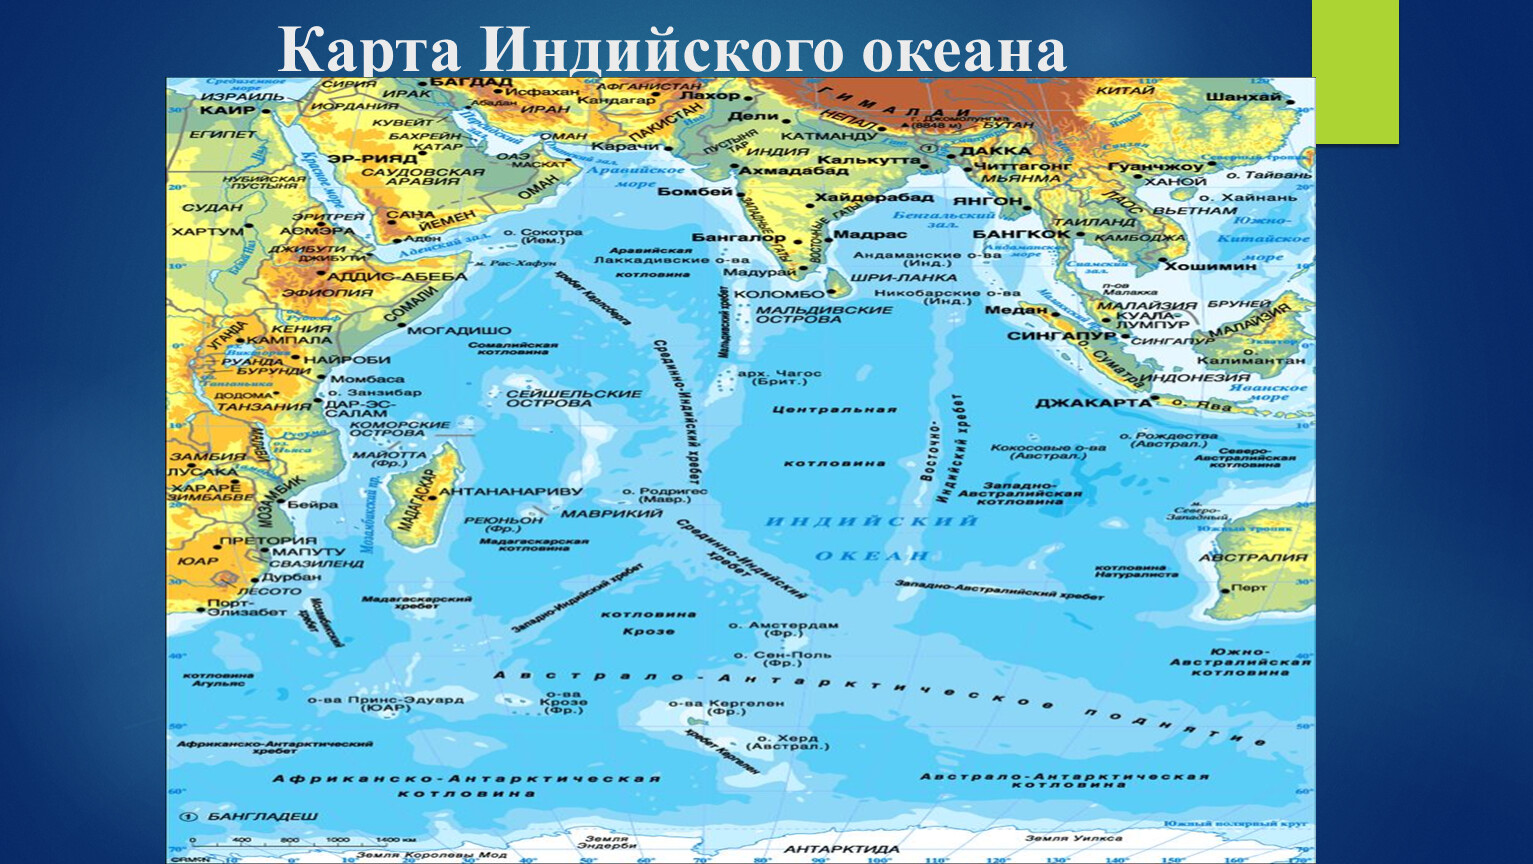 Название полуостровов тихого океана. Индийский океан географическое положение на карте. Физико географическое положение индийского океана. Индийский океан на карте. Физическая карта индийского океана.